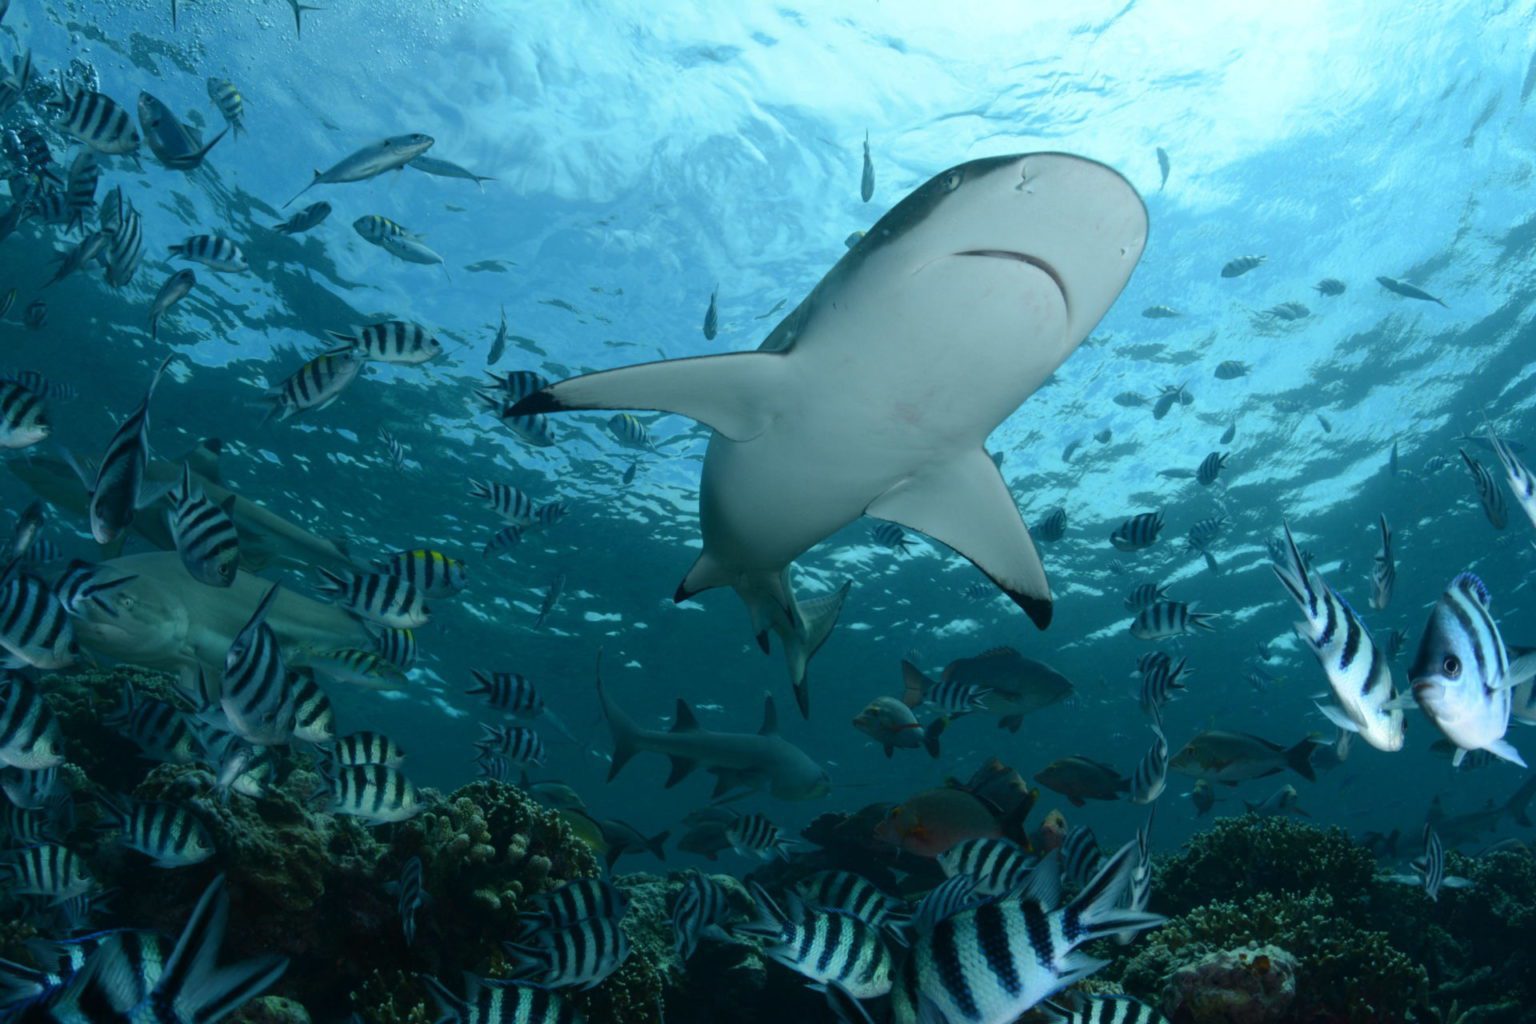 Maldives Planning to Legalise Shark Fishing